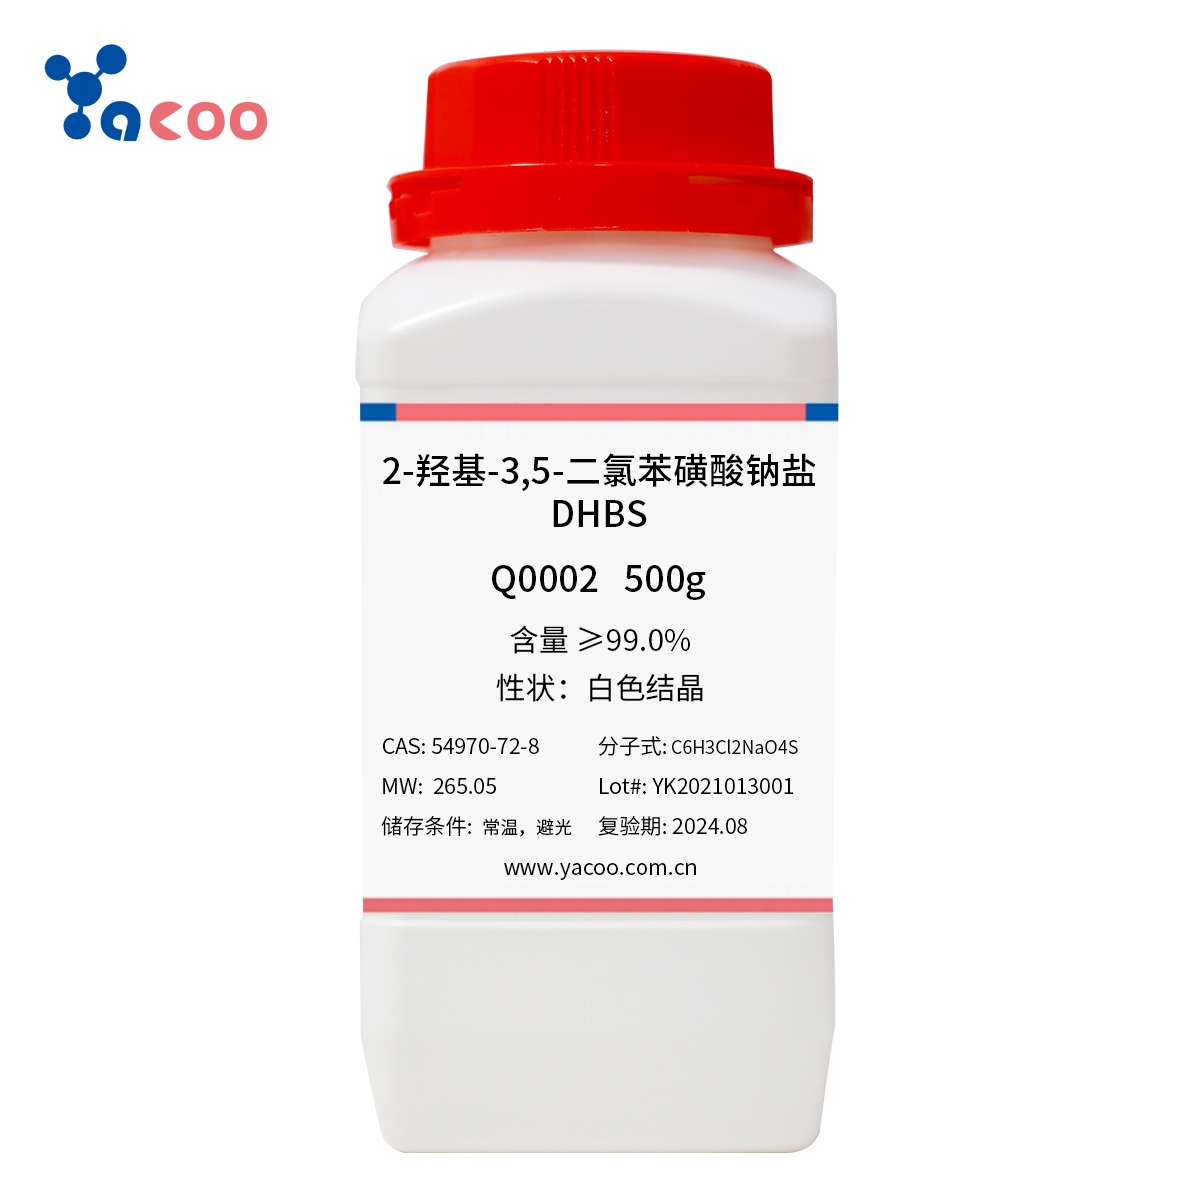 亚科股份	 2-羟基-3,5-二氯苯磺酸钠盐（DHBS）  54970-72-8